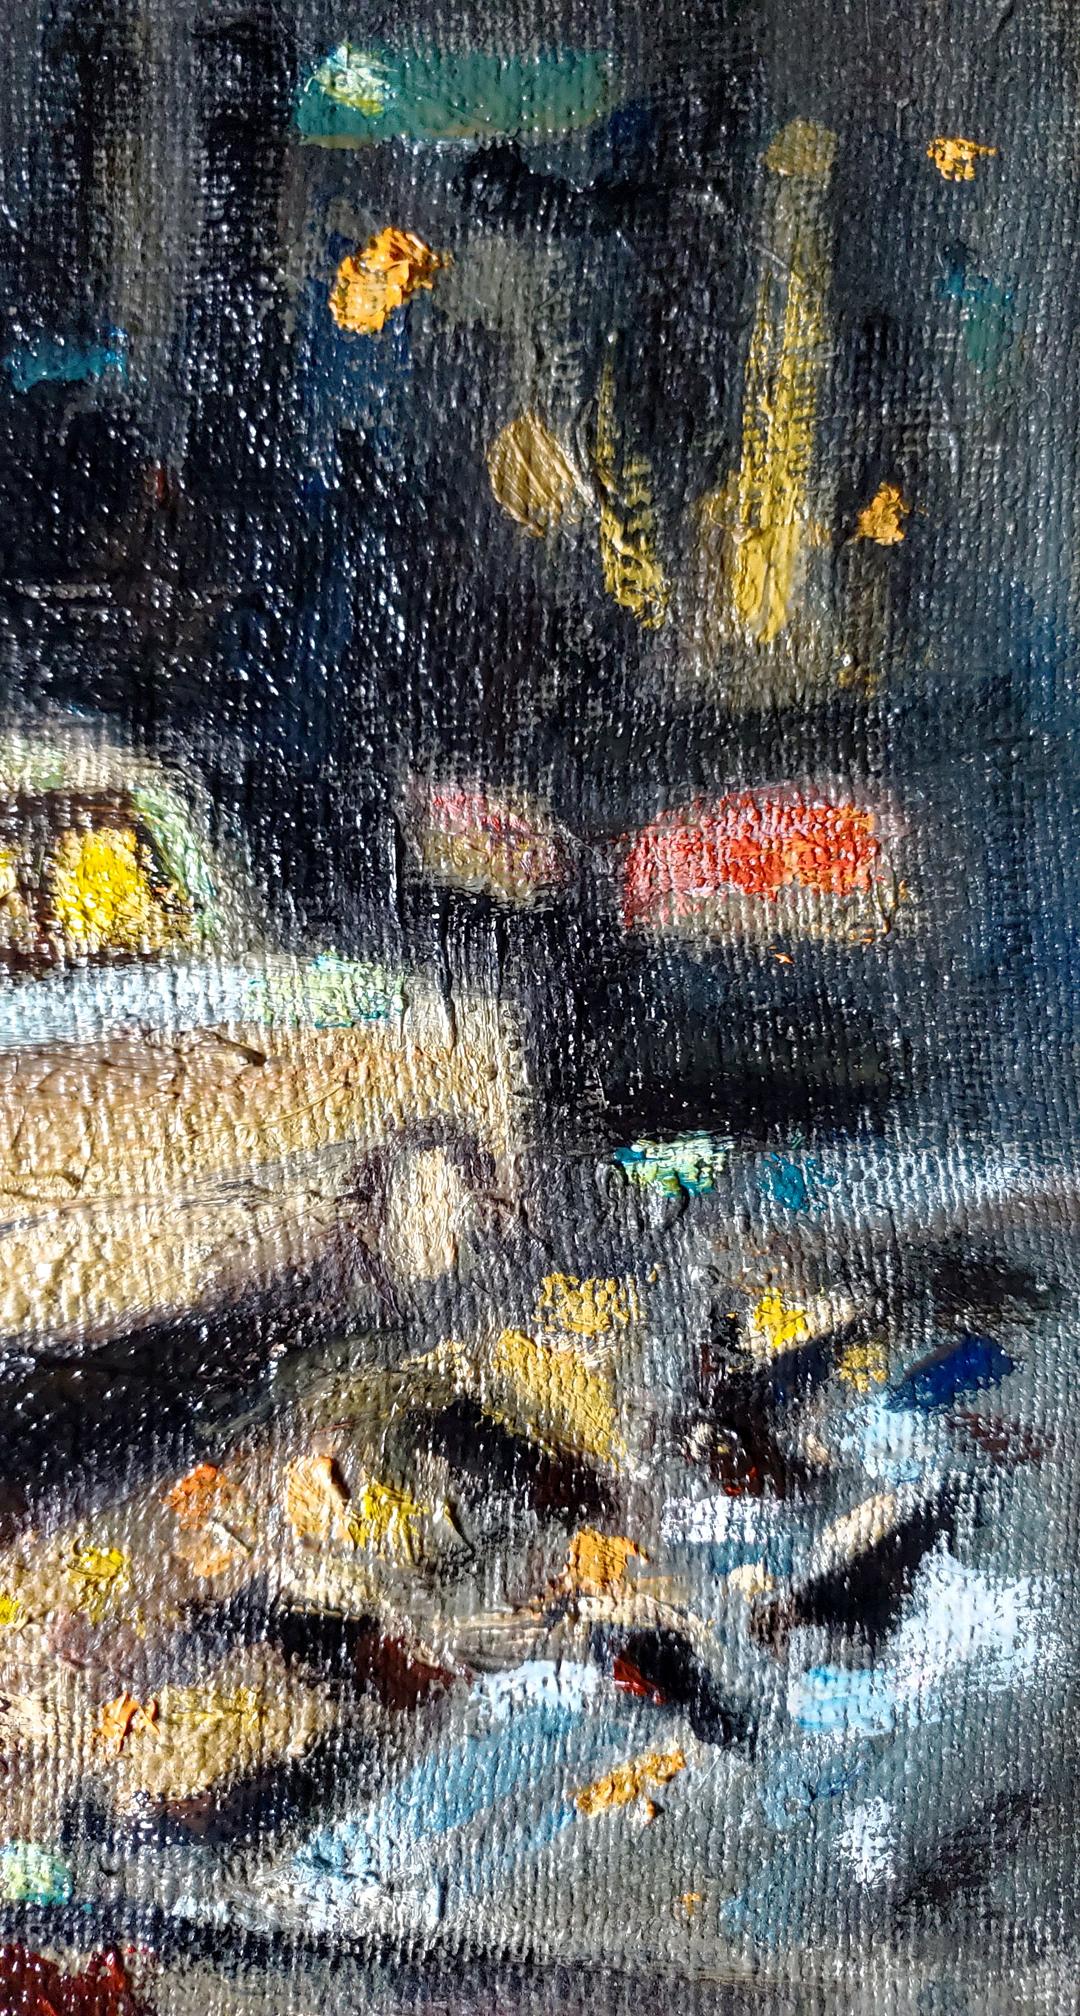 In Litvinov Daniil Olegovich's oil painting, rain dominates the scene